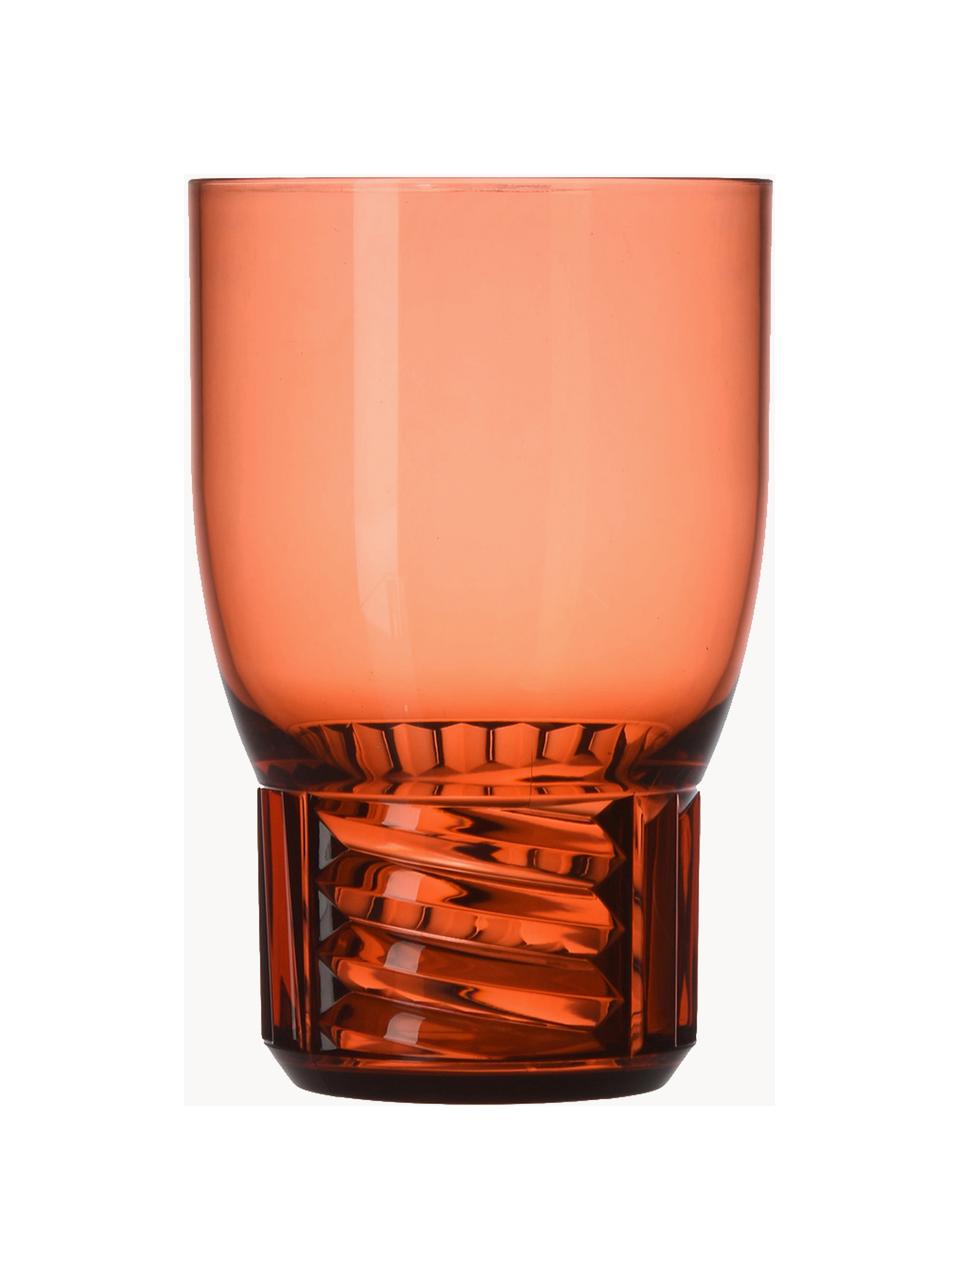 Vasos con relieves Trama, 4 uds., Plástico, Rojo coral transparente, Ø 9 x Al 13 cm, 460 ml